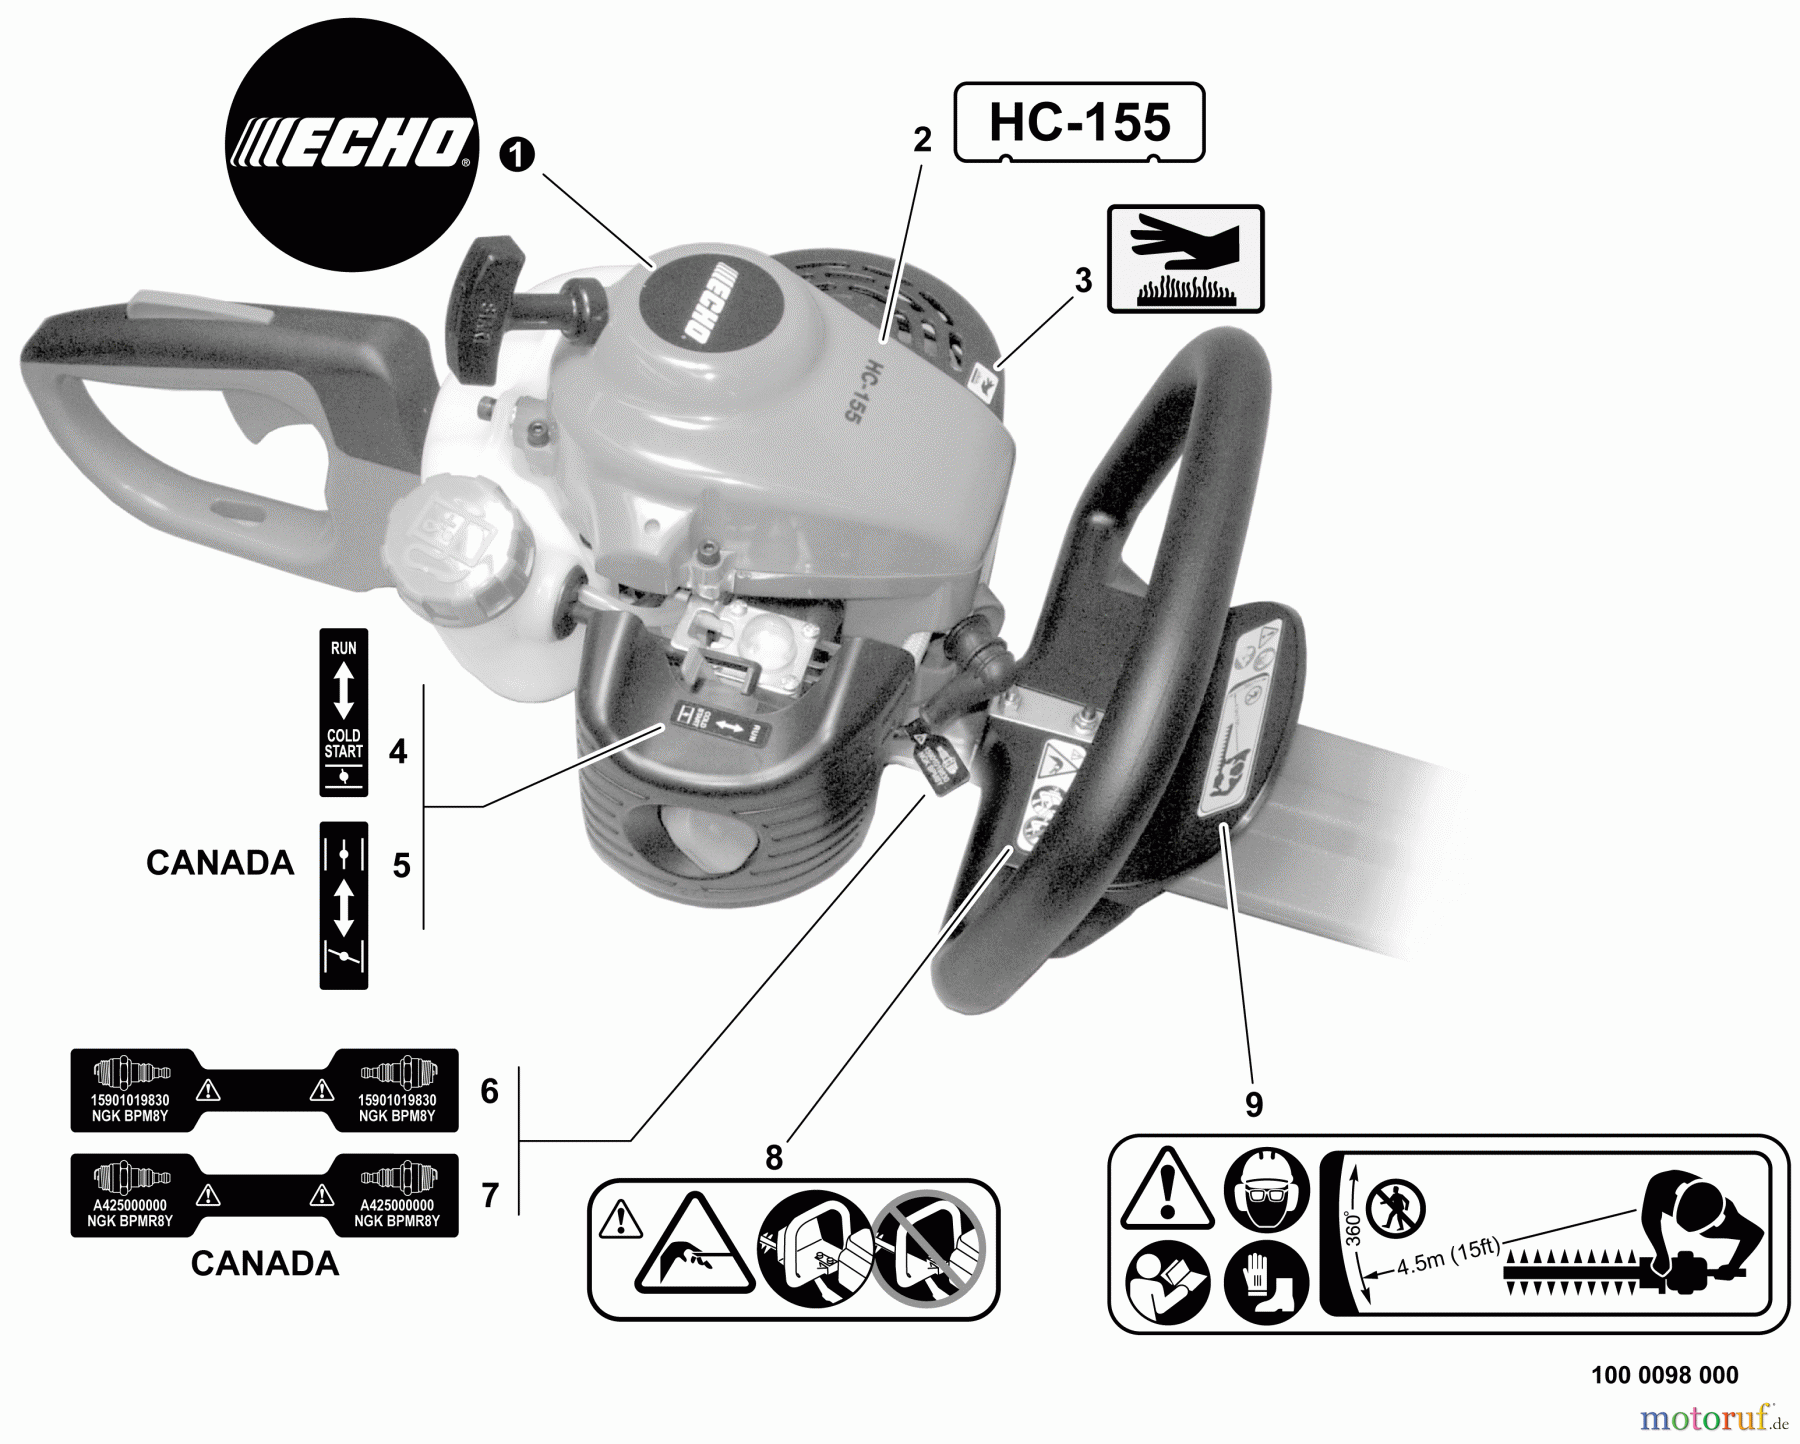  Echo Heckenscheren HC-155 - Echo Hedge Trimmer, S/N: S68011001001 - S68011999999 Labels